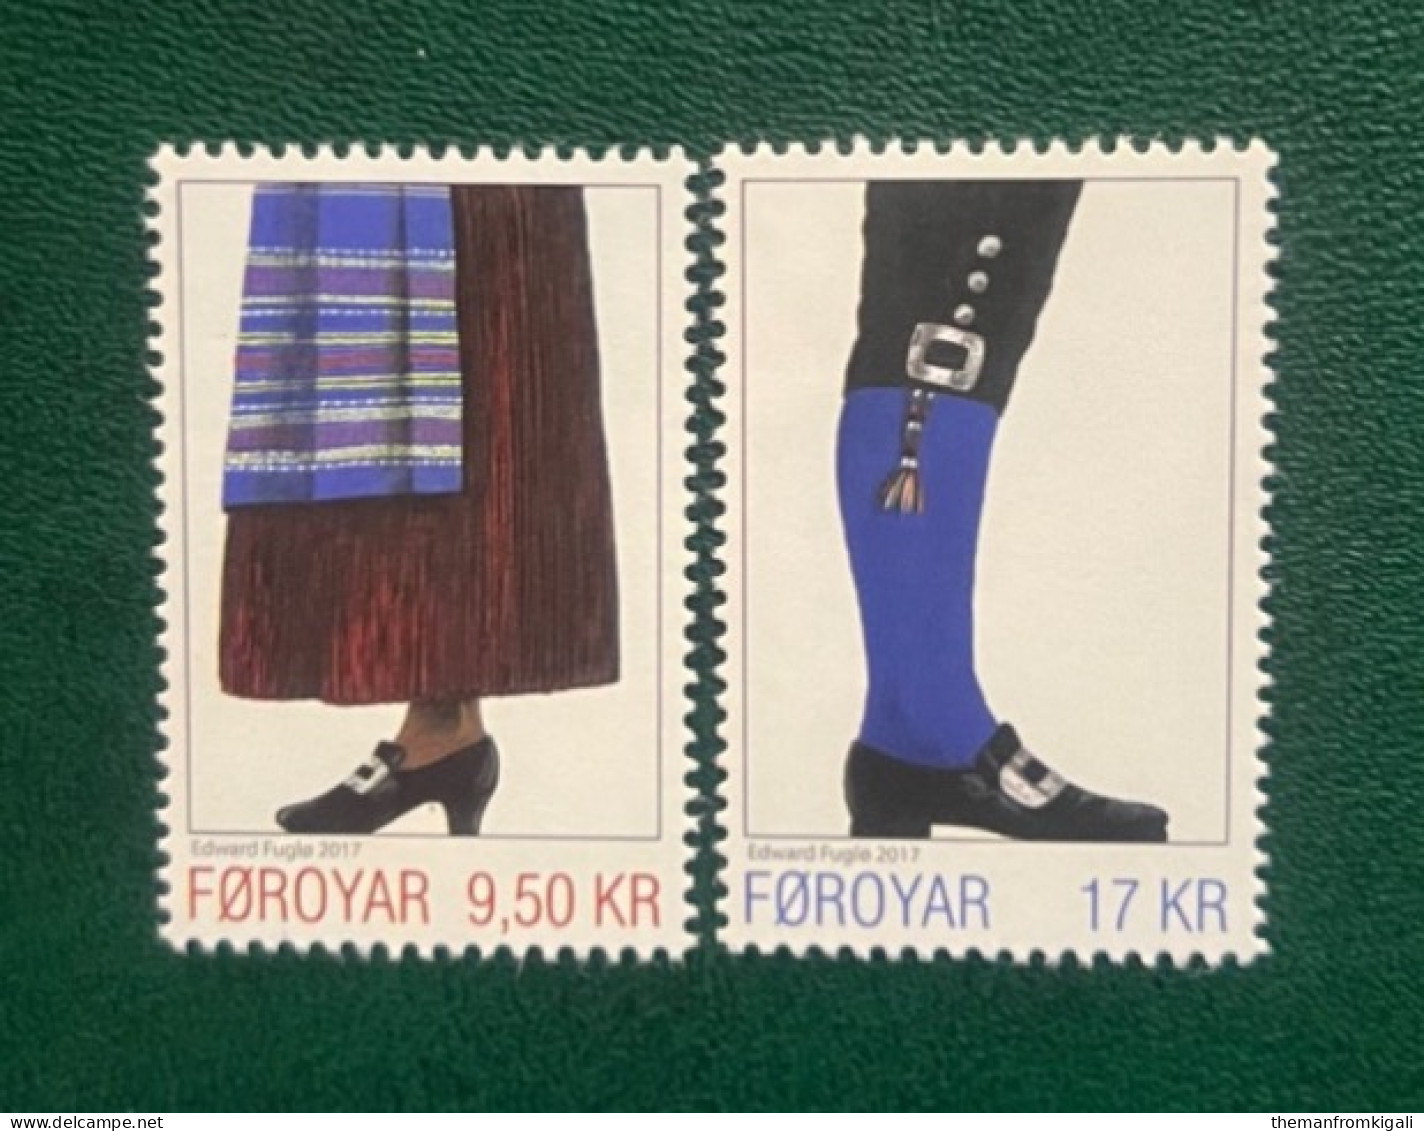 Faroe Islands 2017 Faroese National Costumes - Faroe Islands